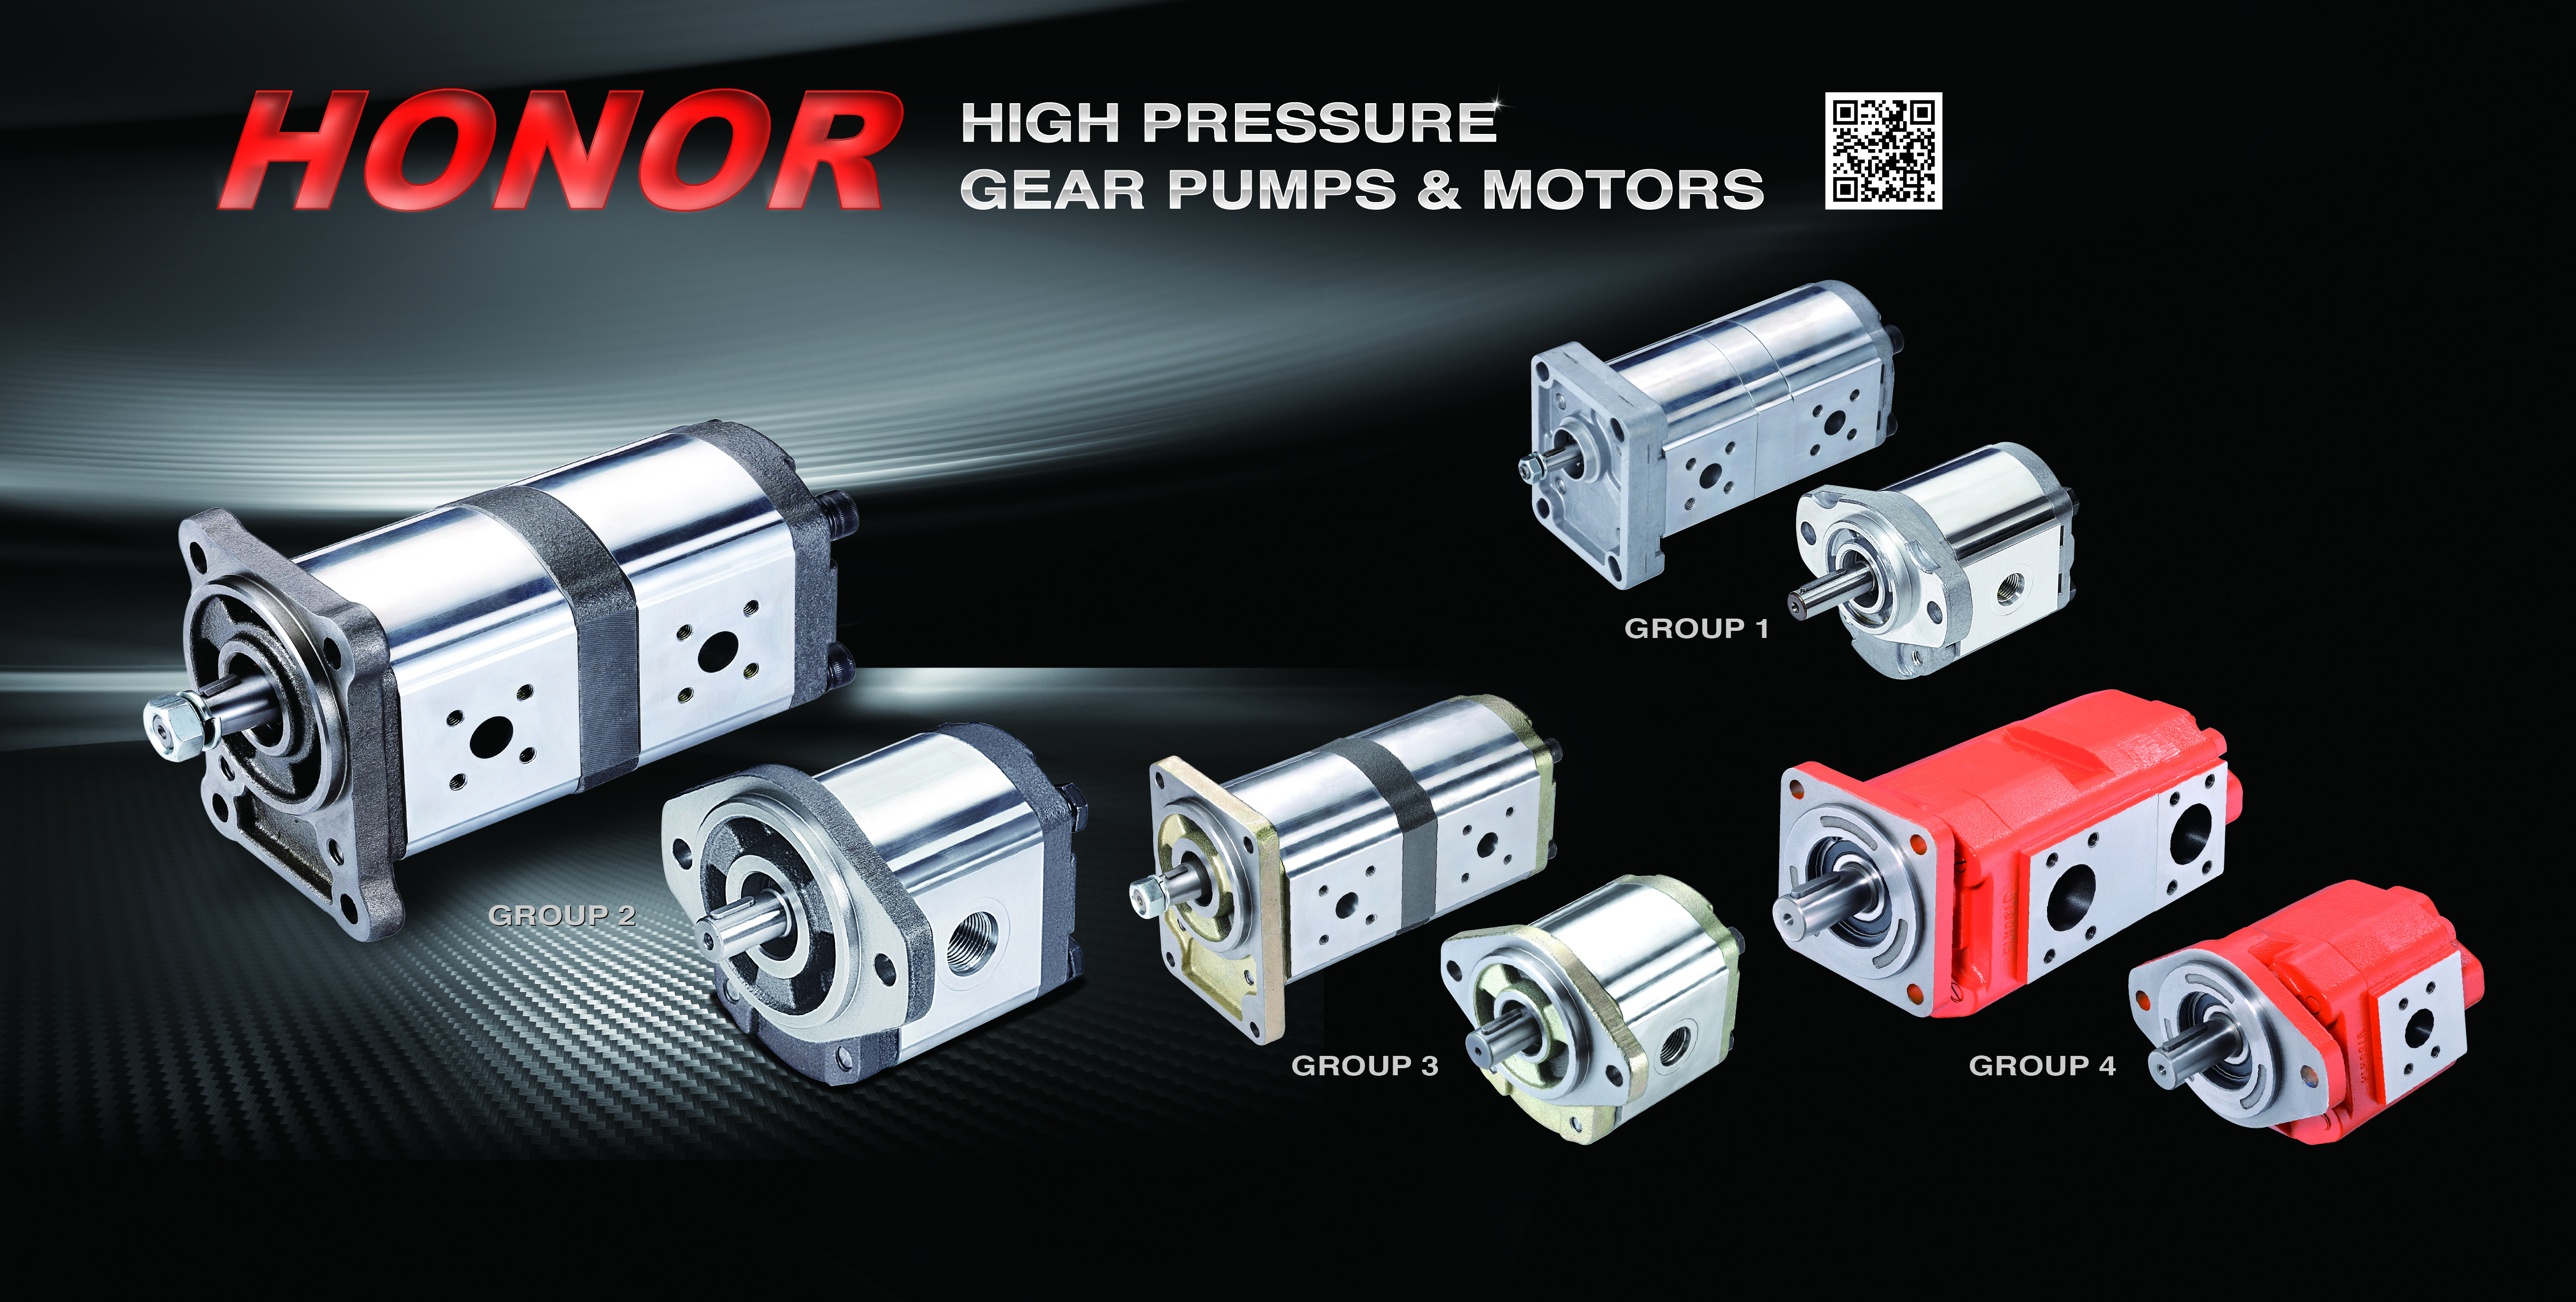 Products|Hihg Pressure Gear Pumps & Motors